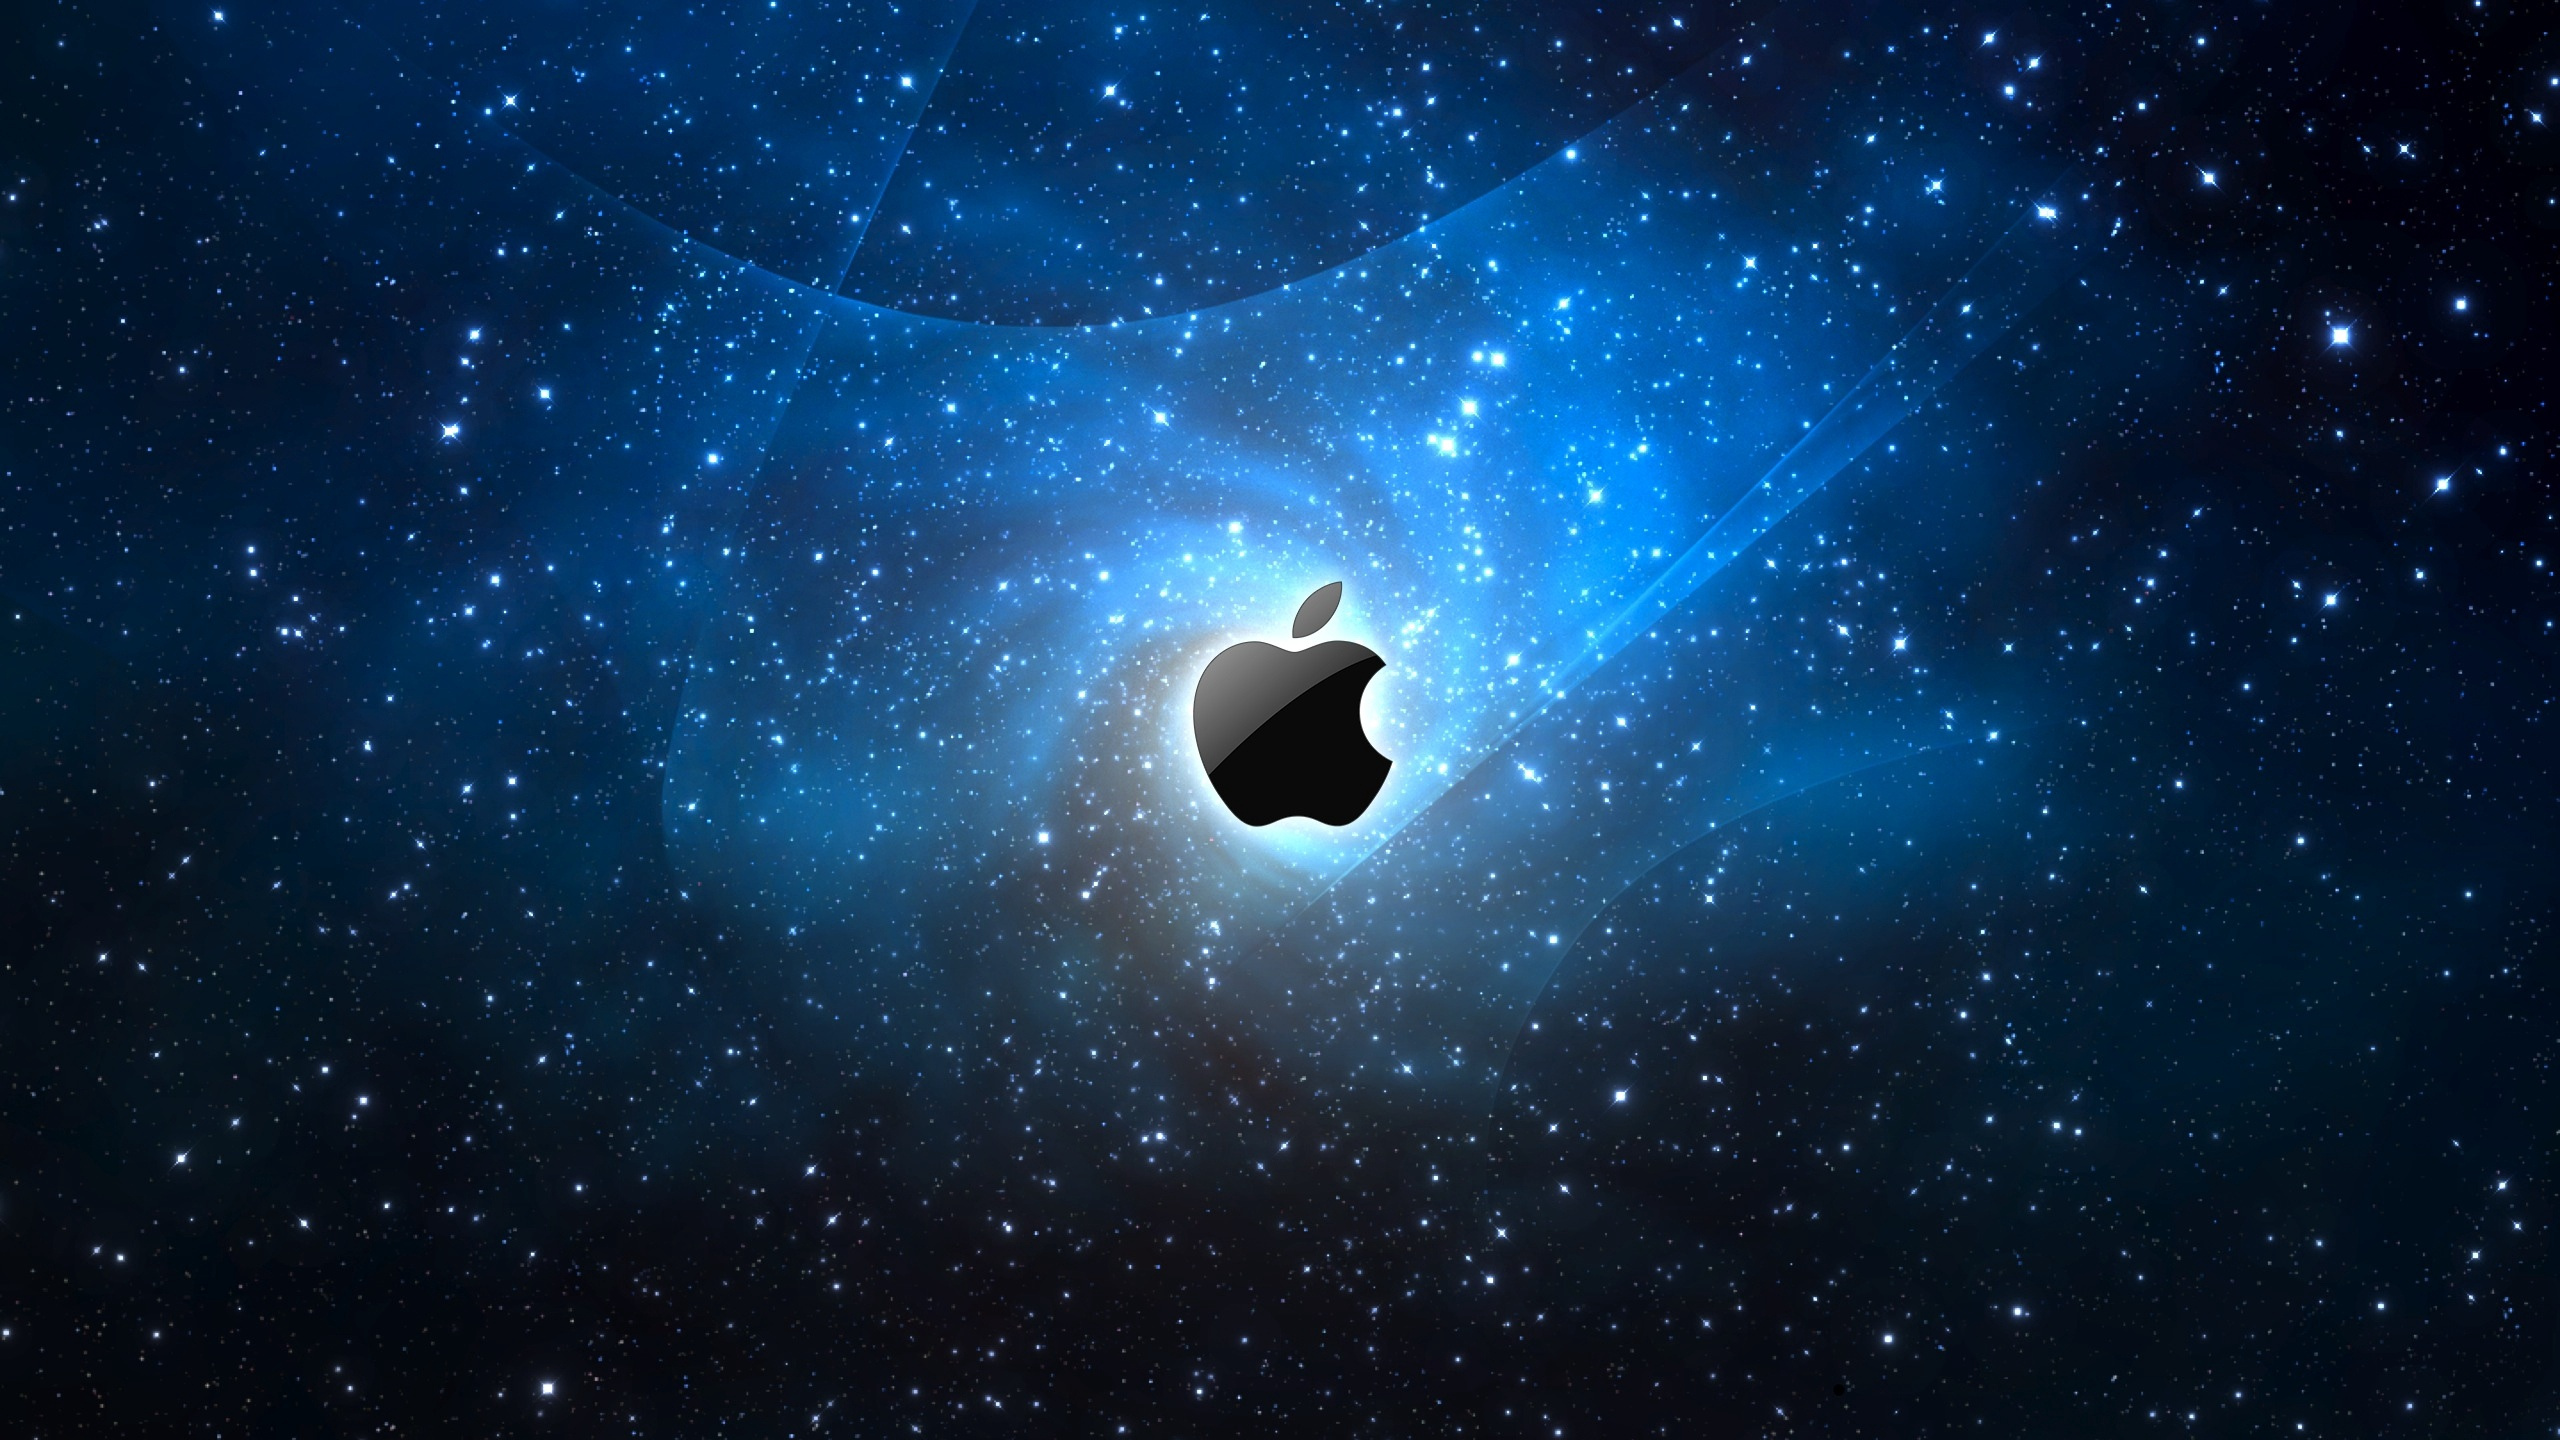 Apple, Ambiente, el Espacio Exterior, Objeto Astronómico, Espacio. Wallpaper in 2560x1440 Resolution